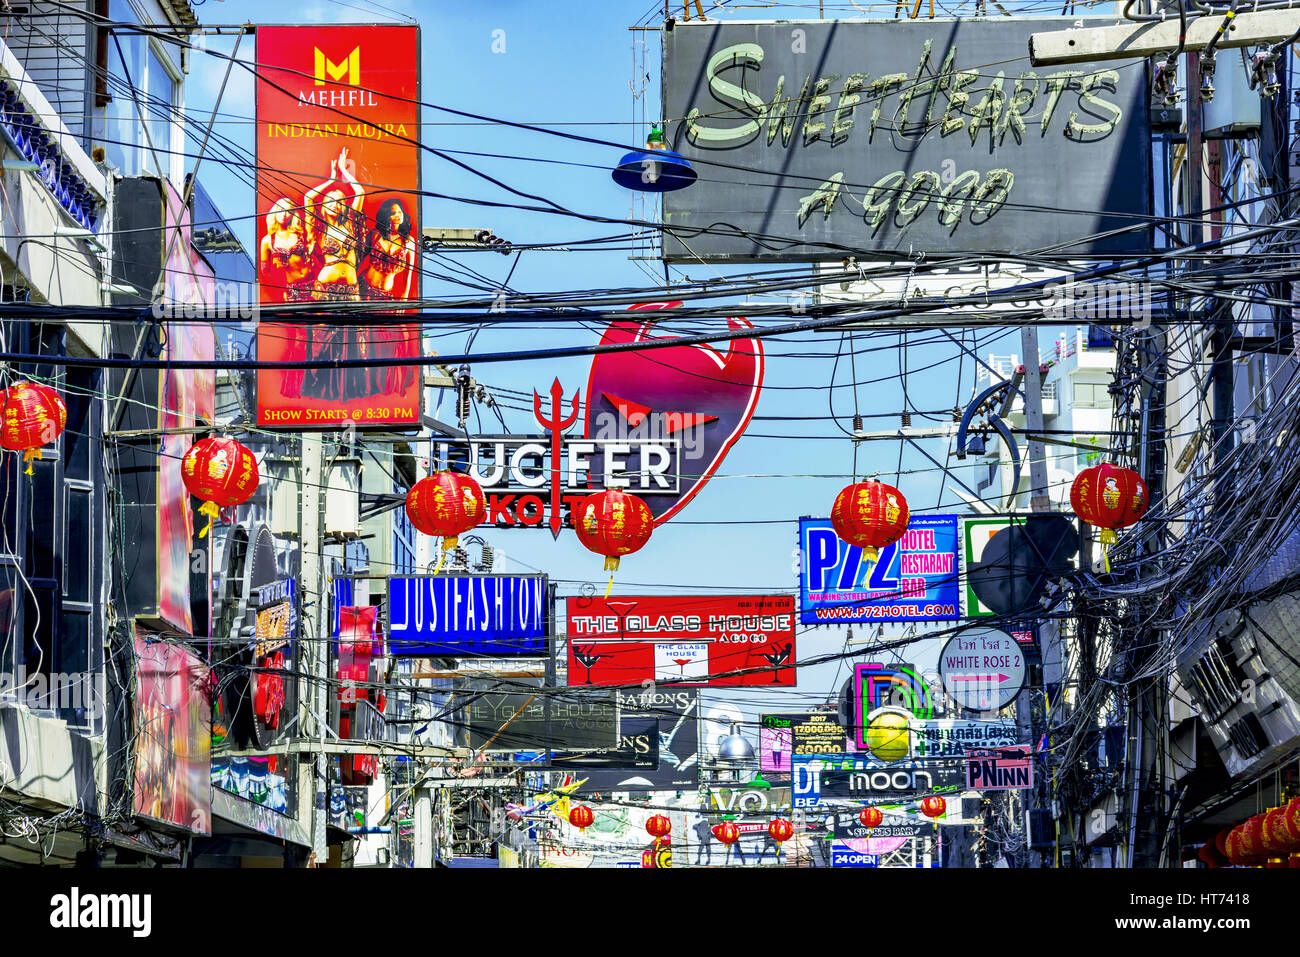 PATTAYA, THAILAND - 25 Januar: Ansicht der Walking street Anzeichen von Bars, Clubs und Geschäften, die die Touristen in der Regel in der Nacht auf 25. Januar 2017 ich Besuche Stockfoto